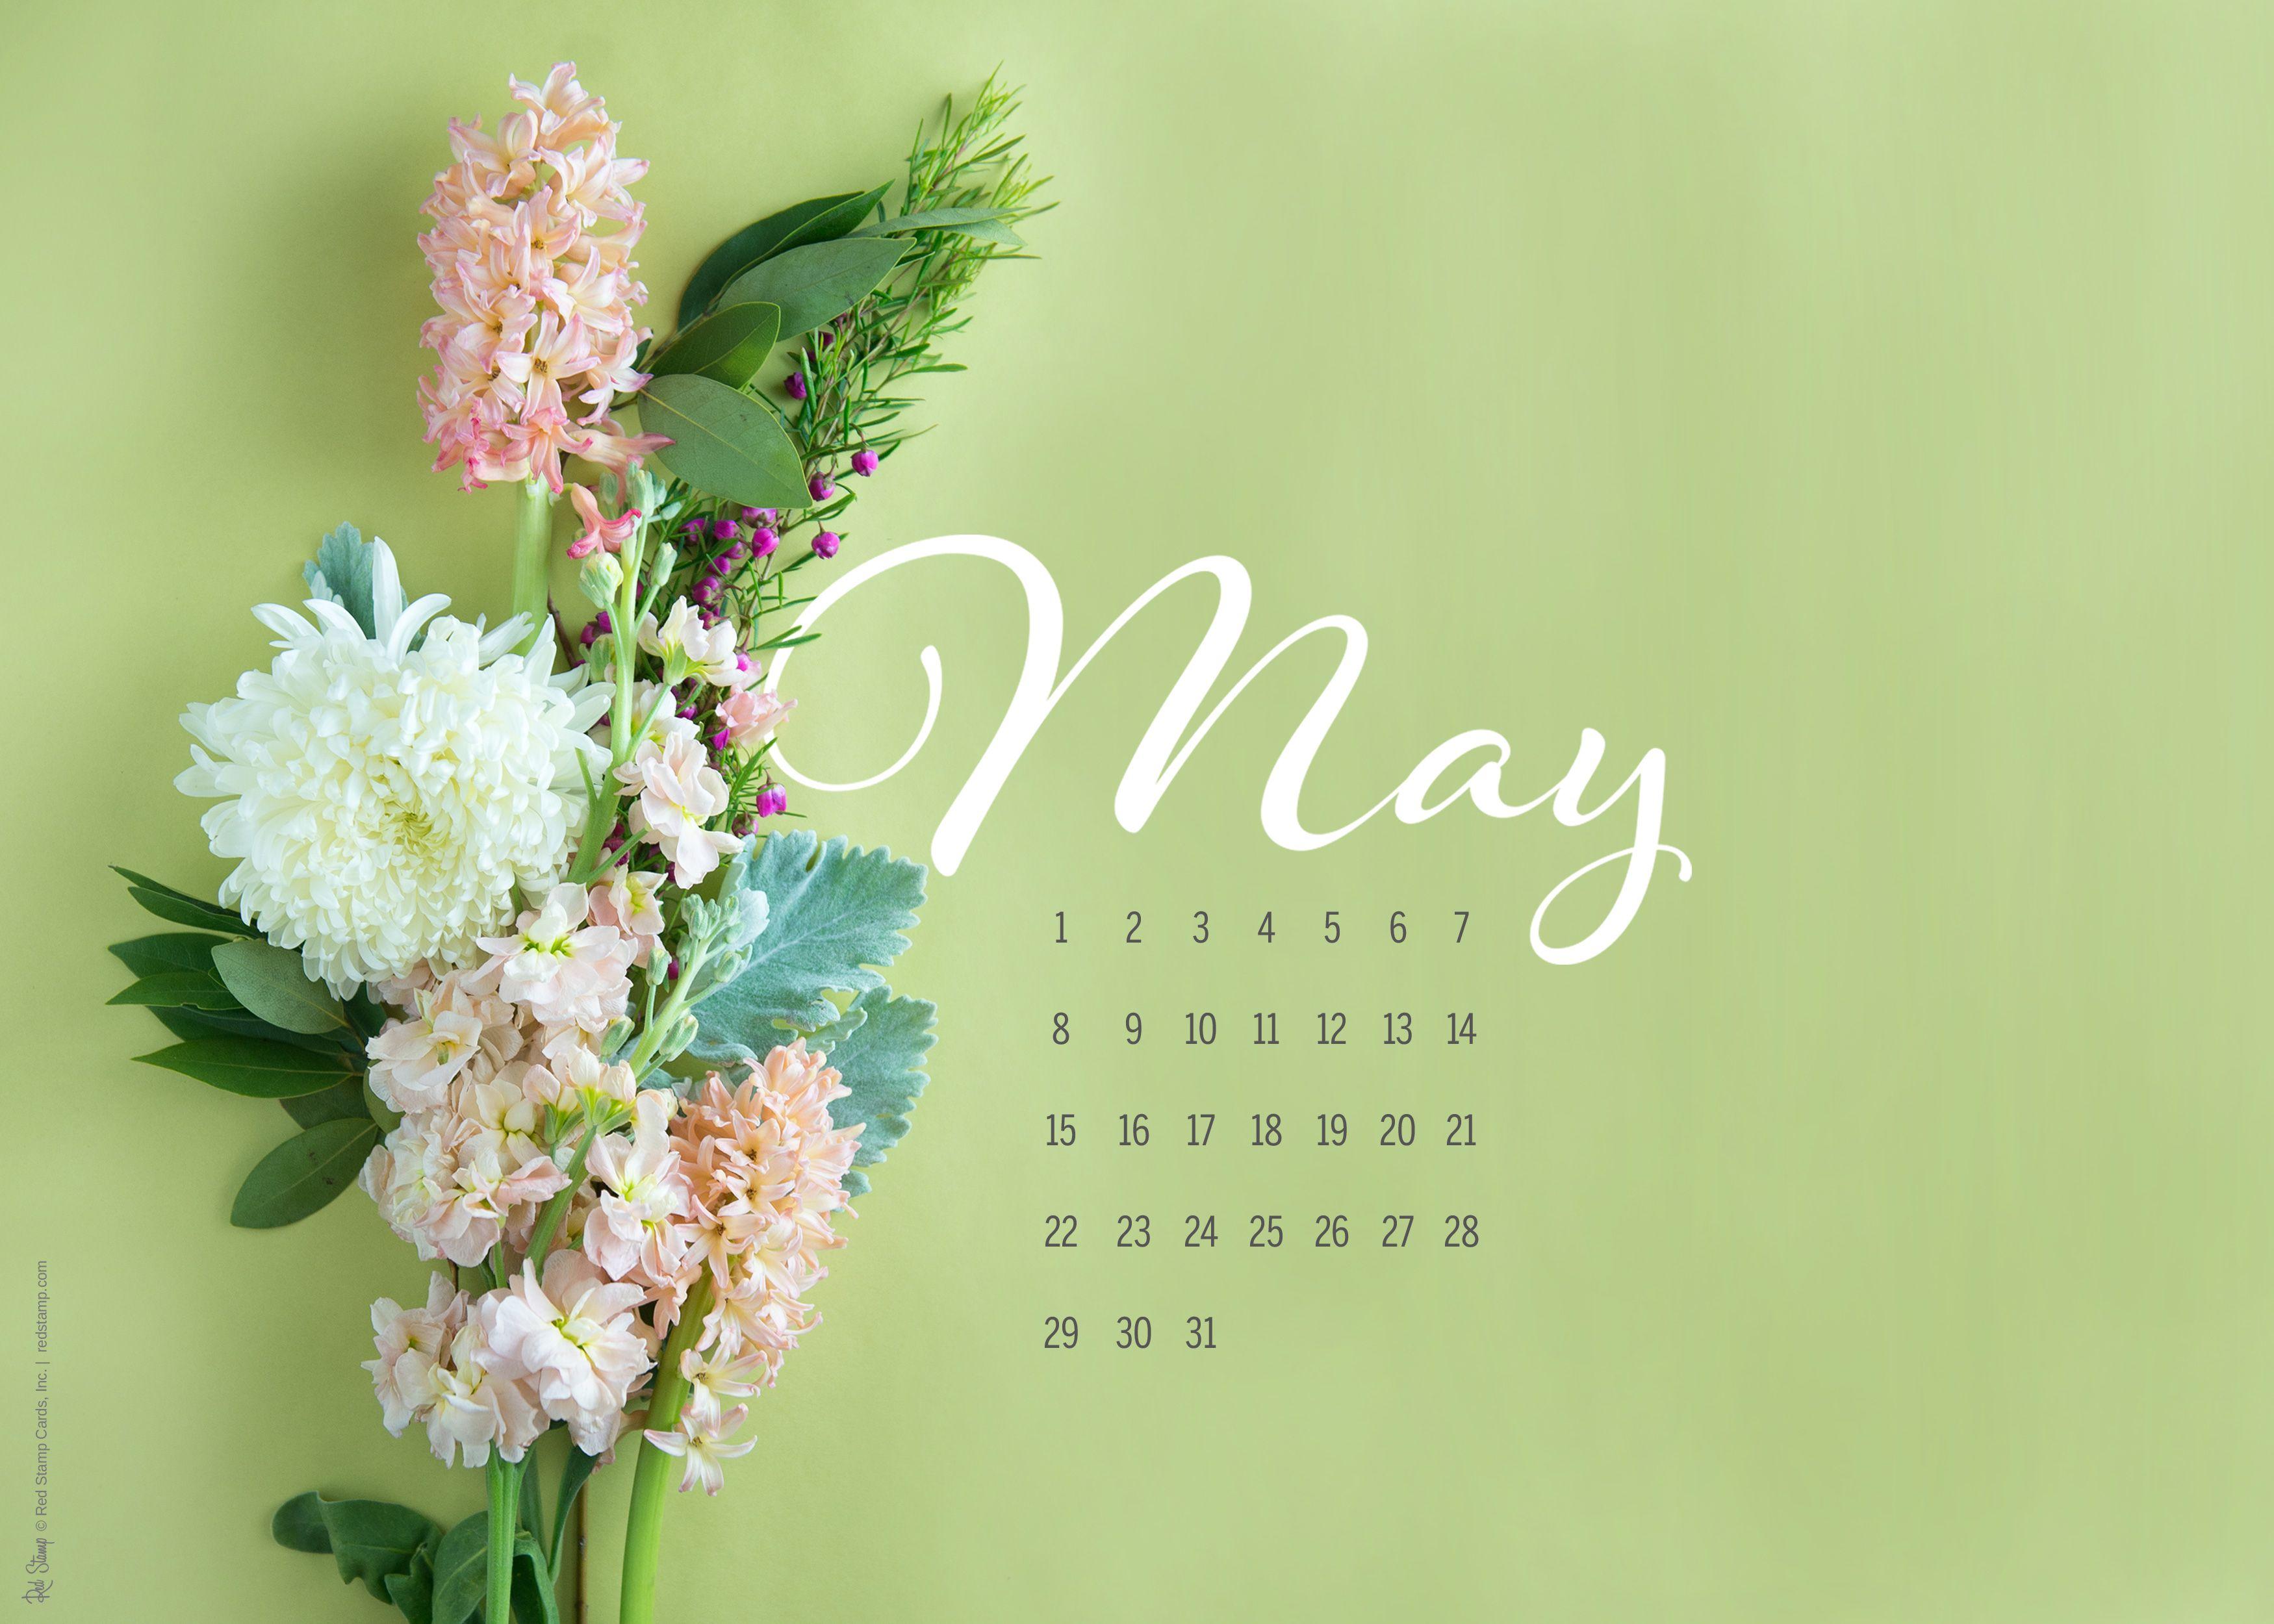 May 2016 Free Calendars and Wallpaper